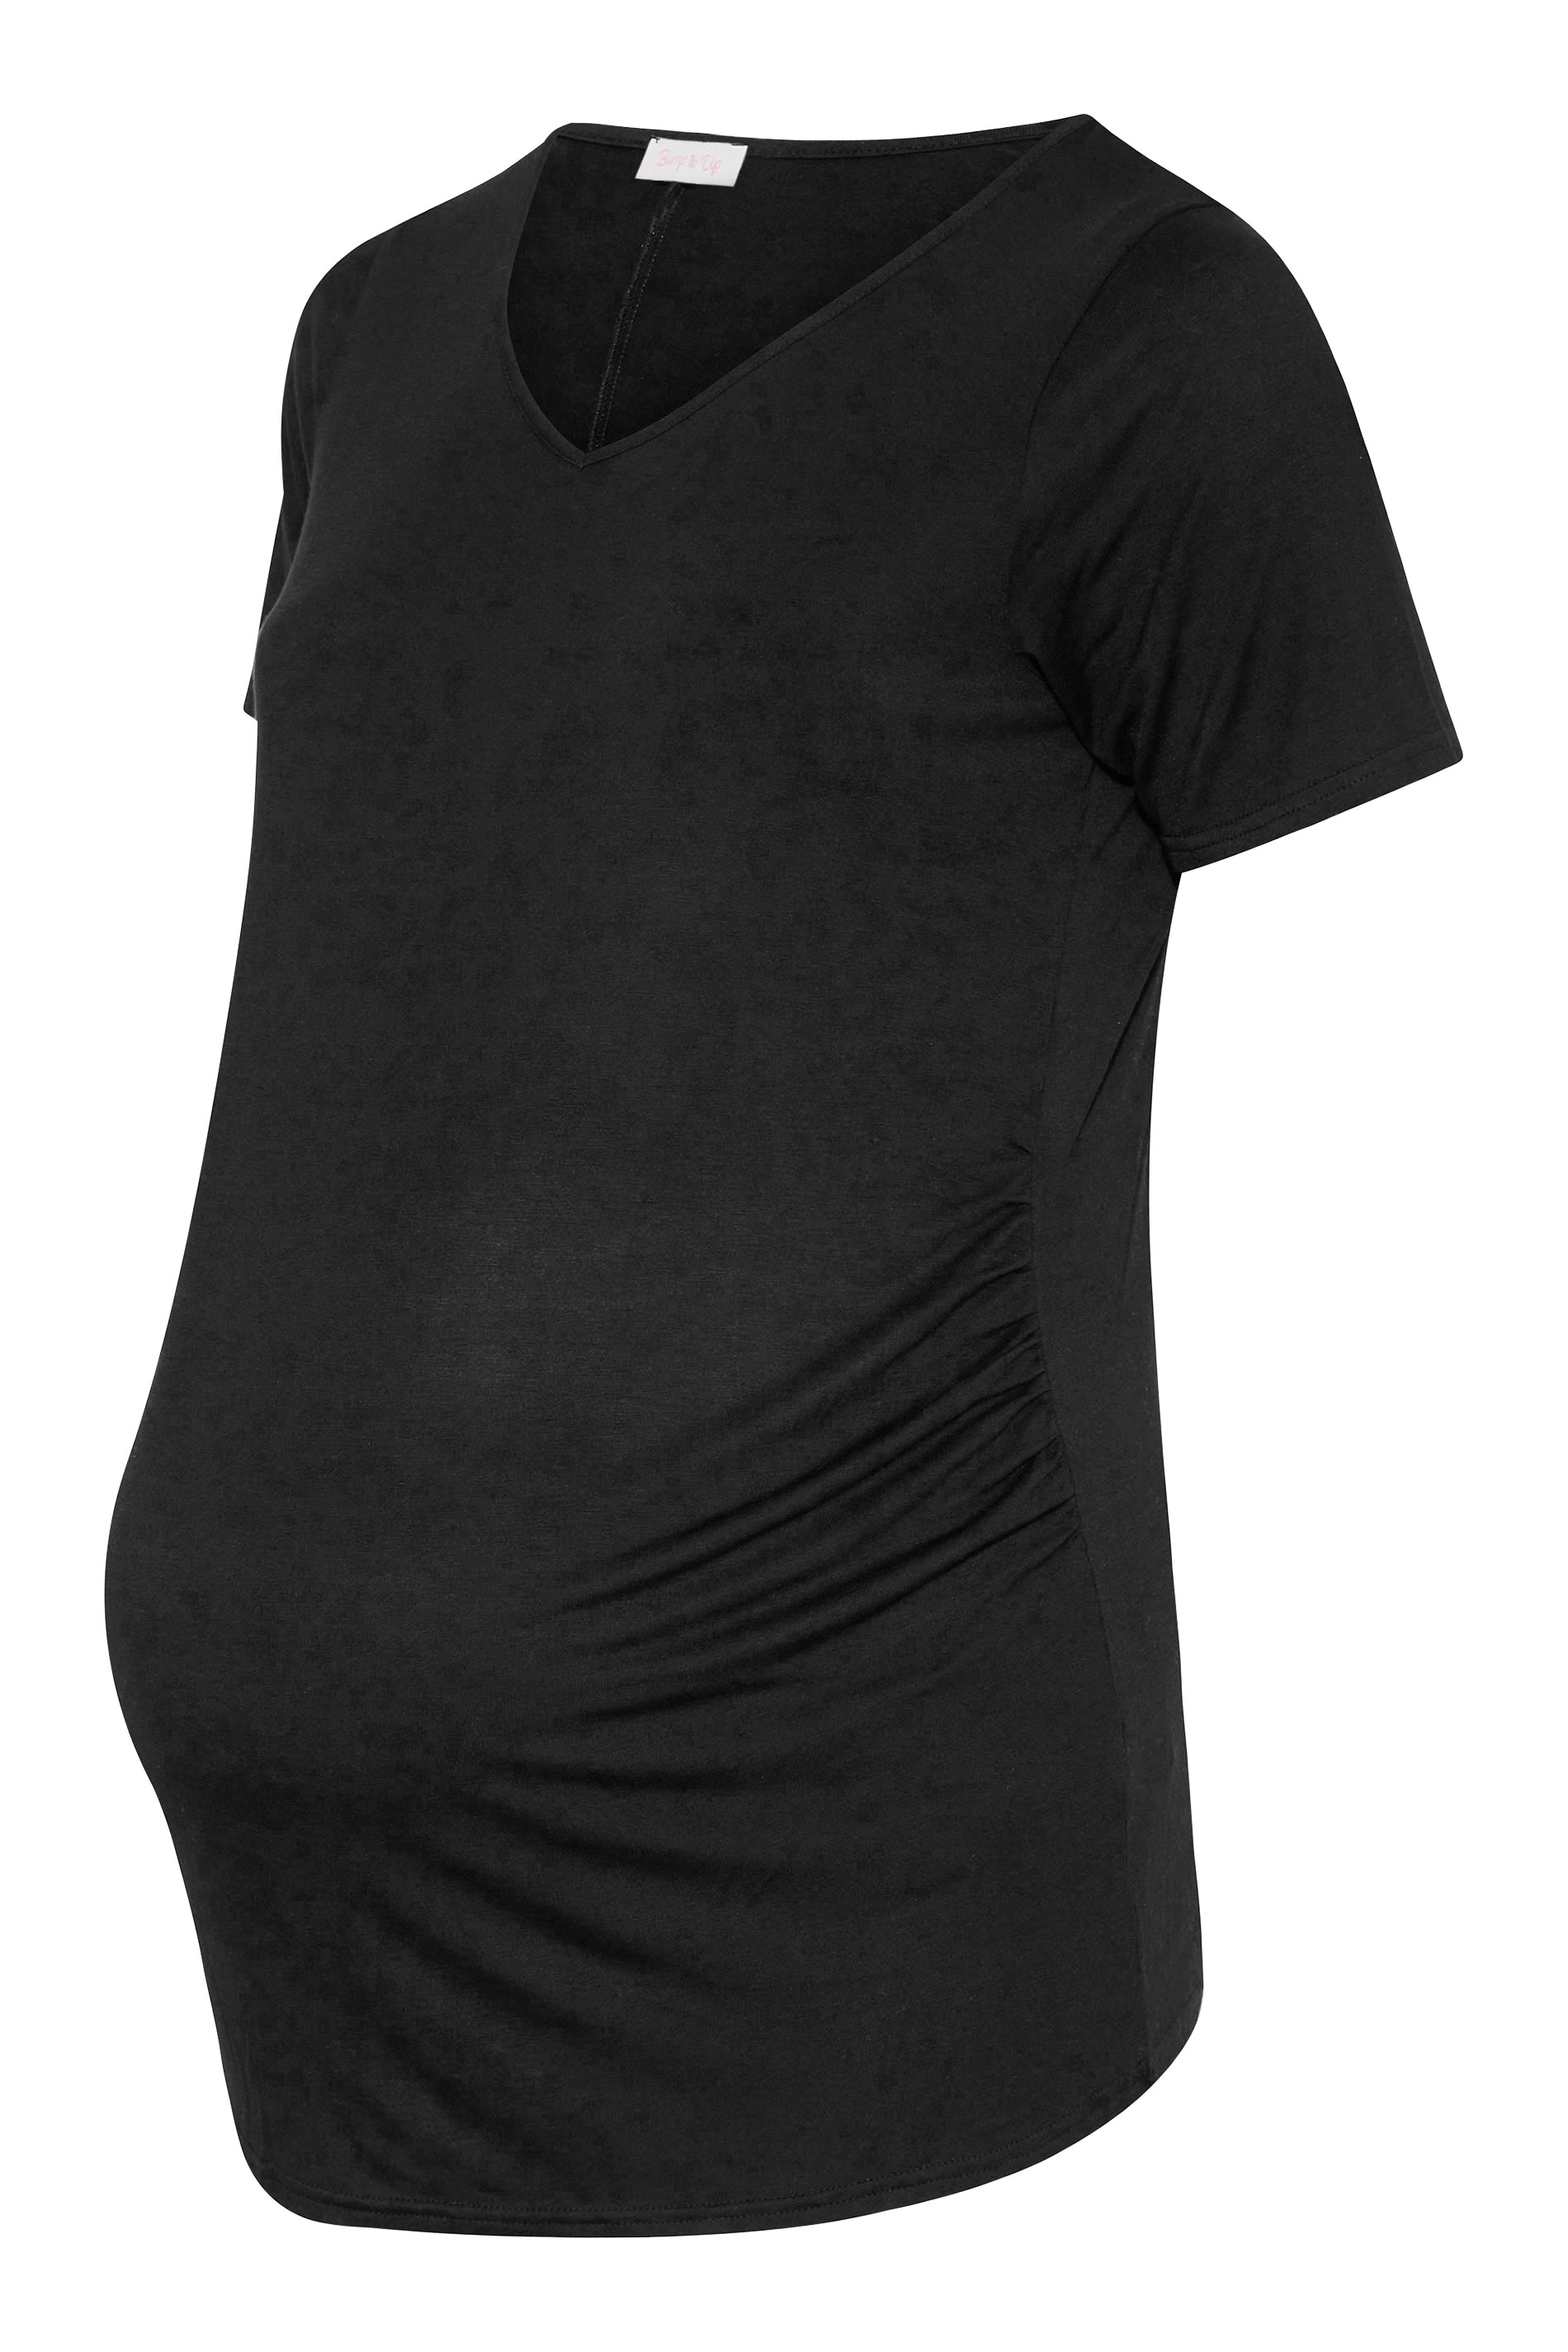 Grande taille  Vêtements de Grossesse Grande taille  Tops et t-shirts de grossesse | BUMP IT UP MATERNITY - T-Shirt Noir en Jersey - QA52675